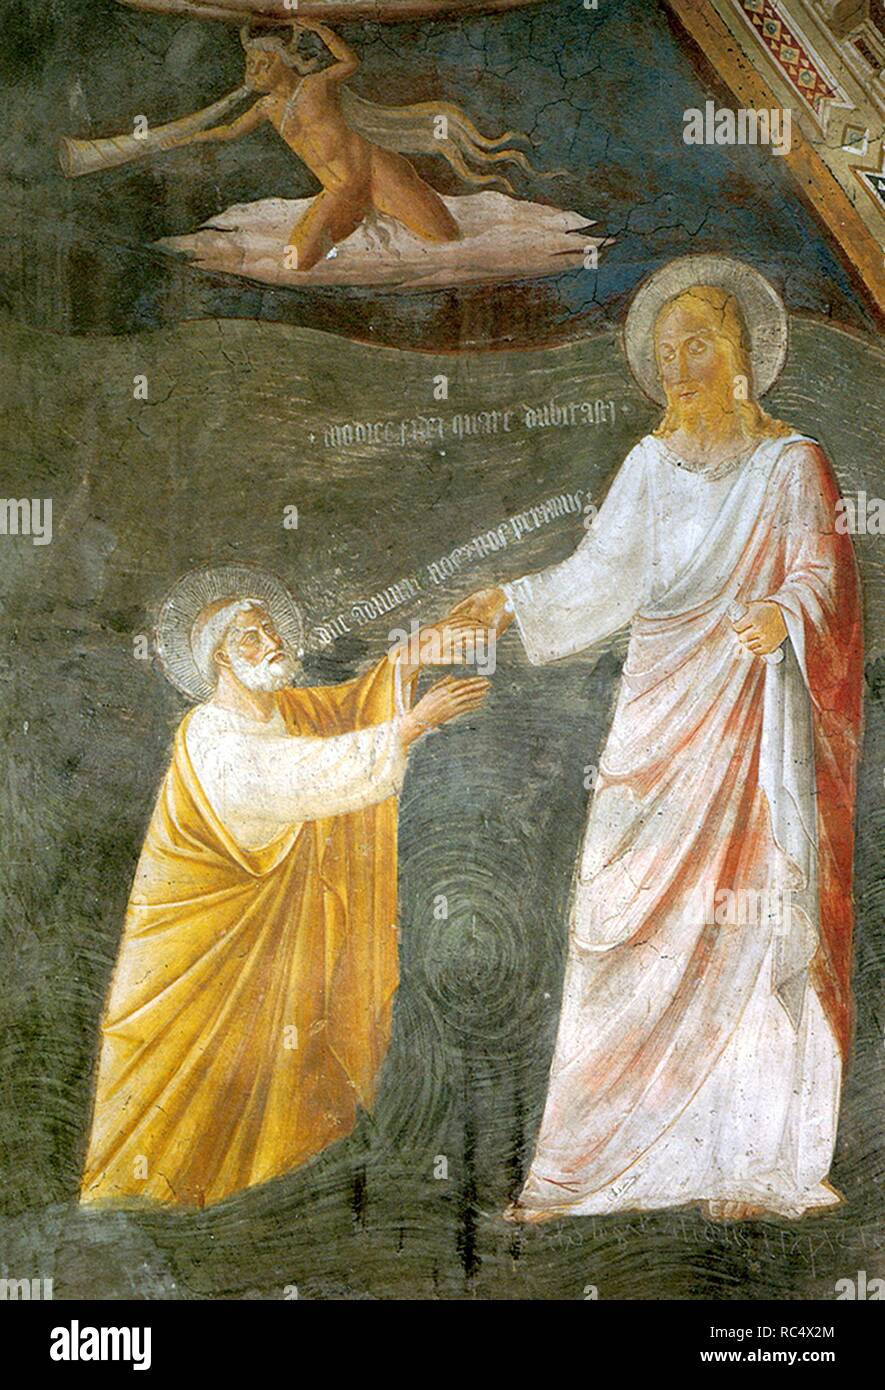 Christ with Apostles on the Sea of Galilee (detail of the fresco in the church of Santa Maria in Campis). Museum: Chiesa di Santa Maria in Campis, Foligno. Author: Mezzastris, Pier Antonio. Stock Photo